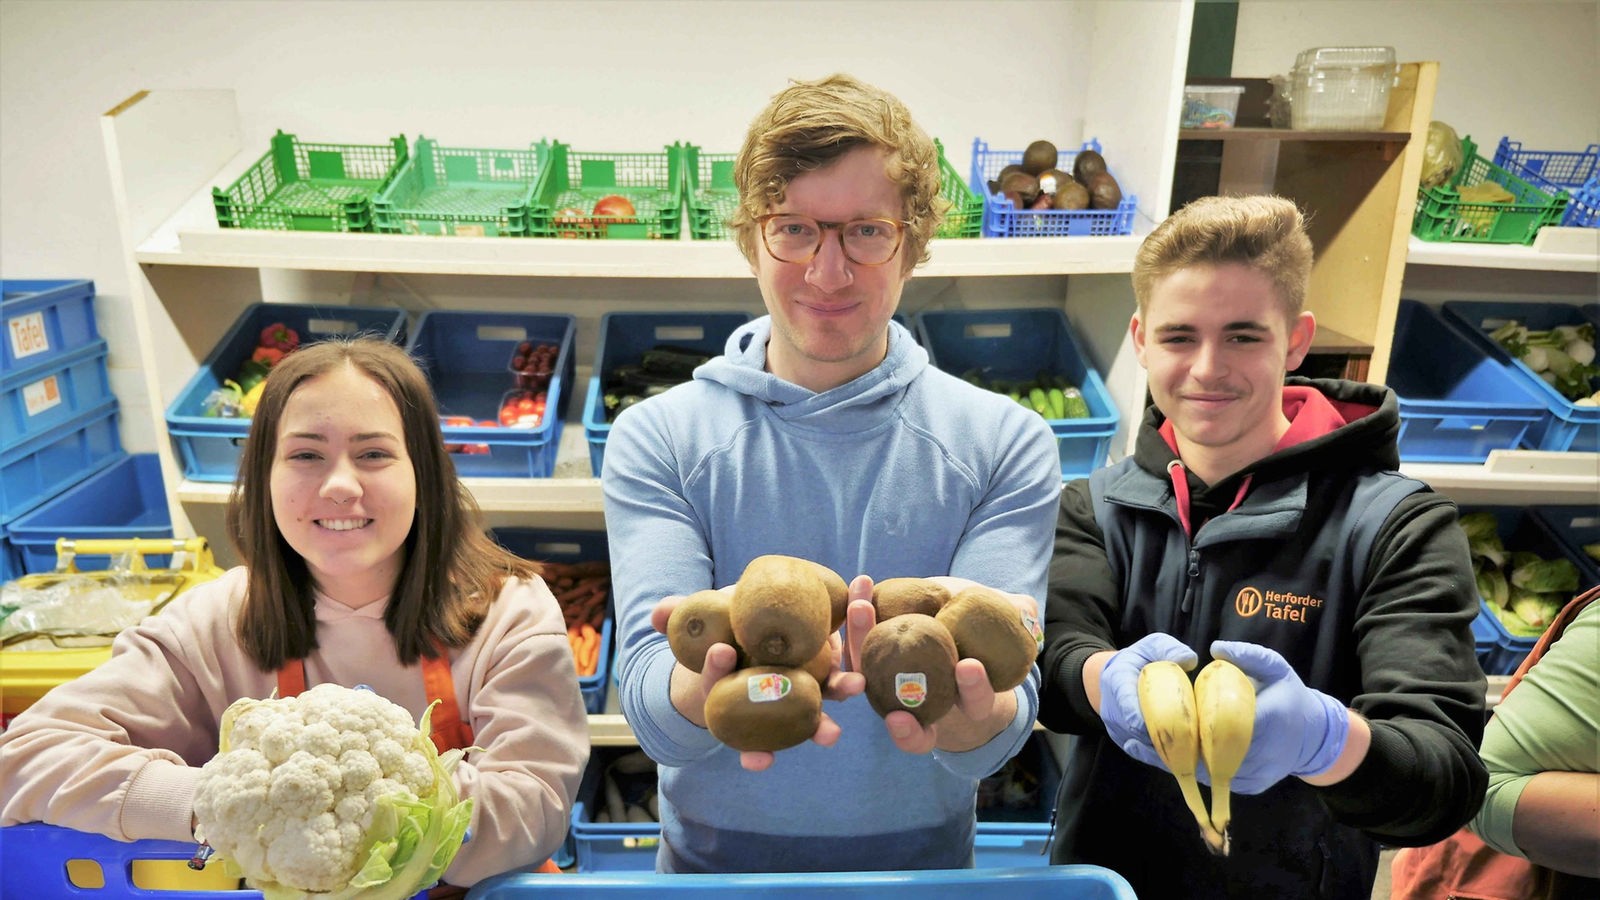 Robert, Lara und Jacq mit Obst und Gemüse in den Händen vor einem Obst- und Gemüseregal